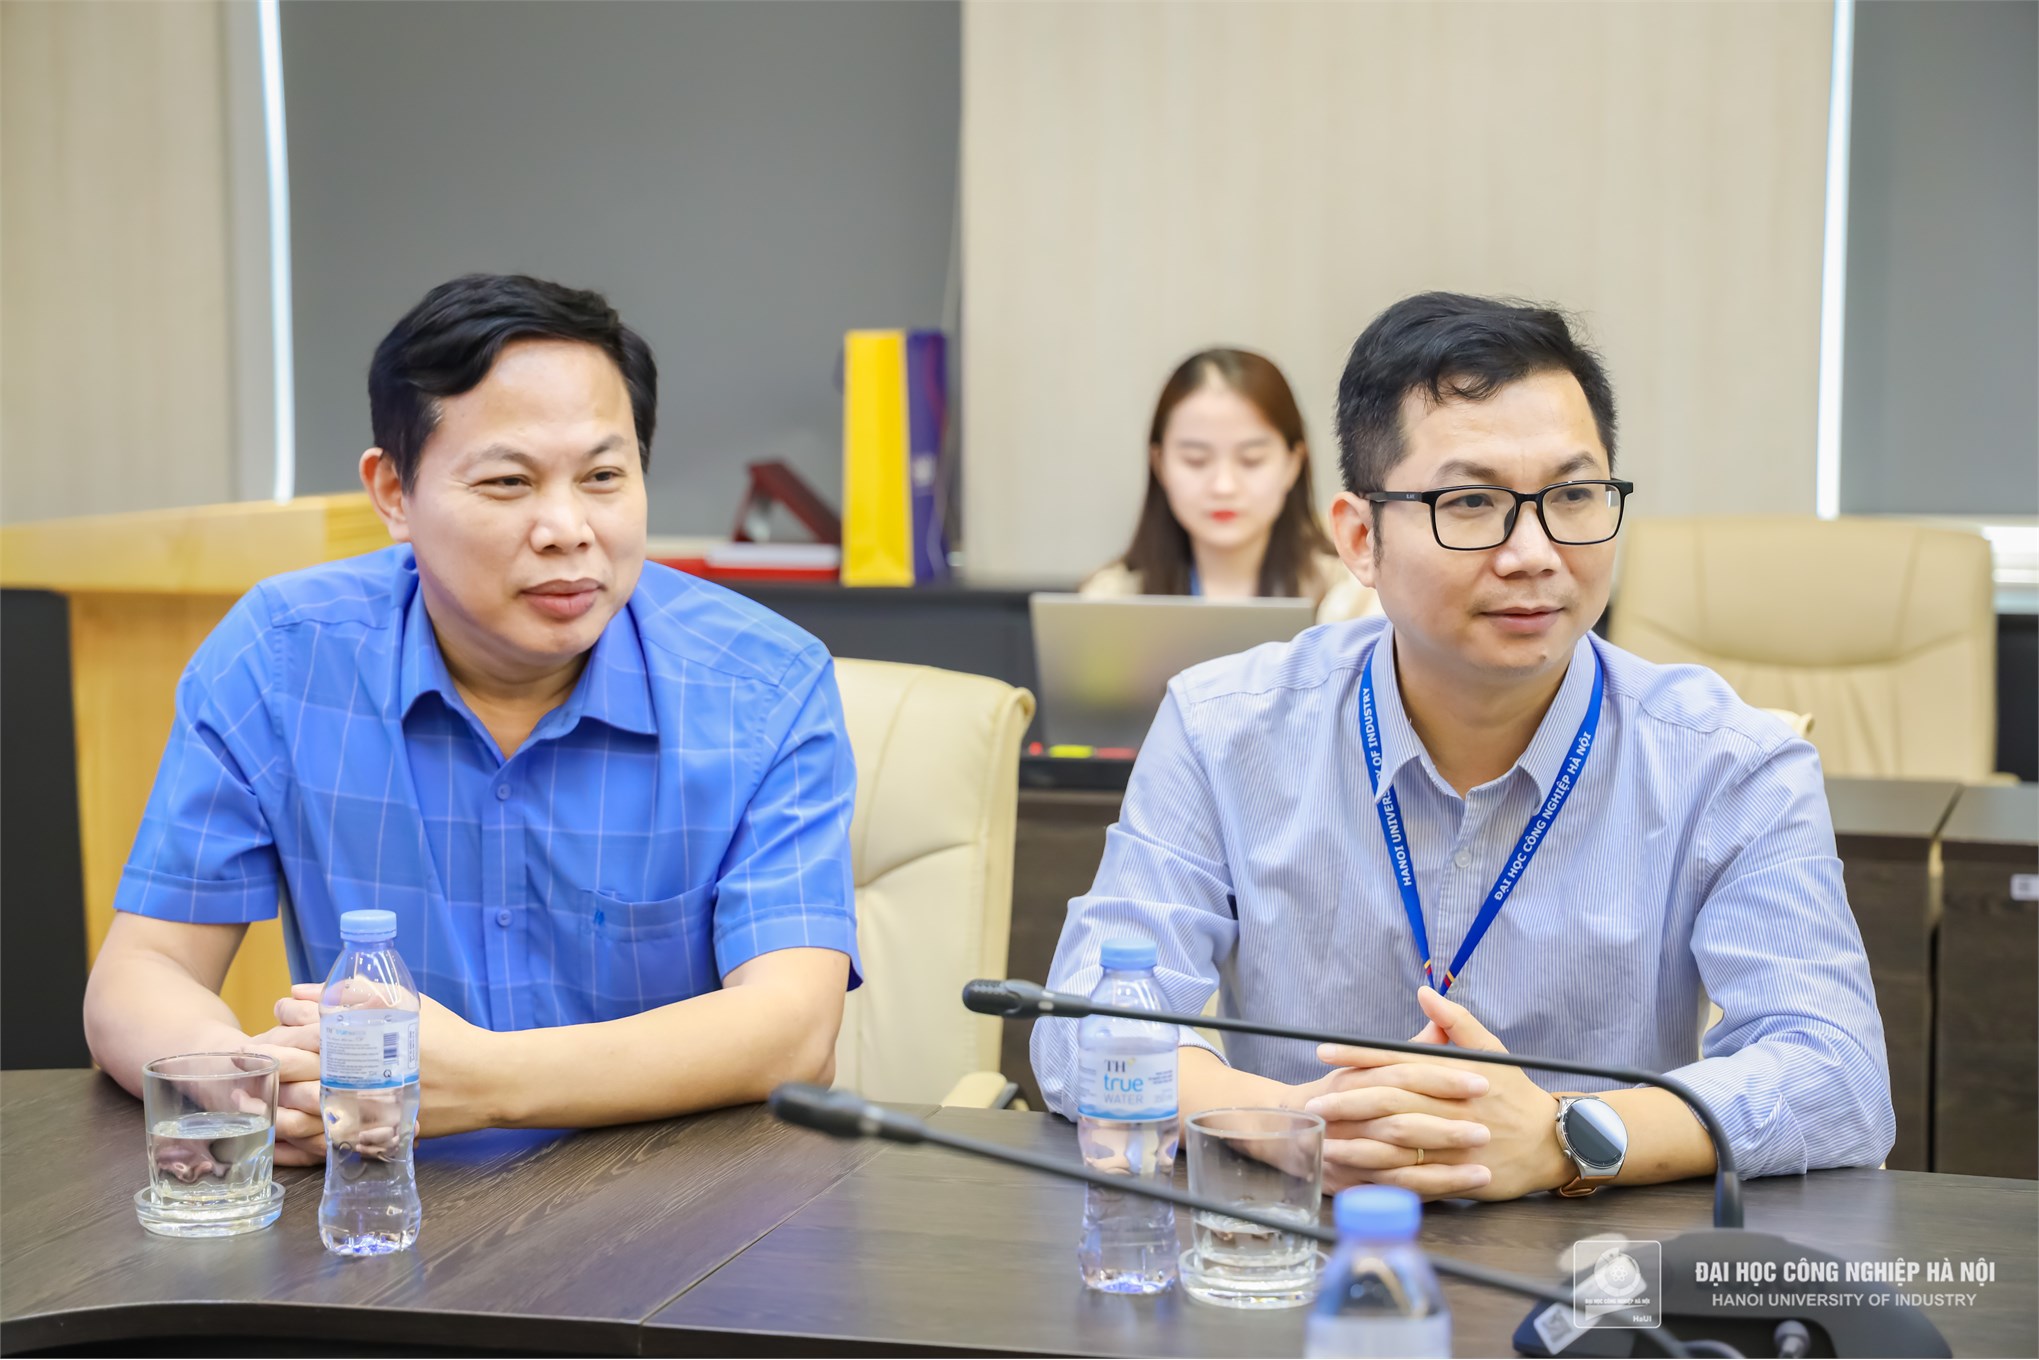 Đại học Công nghiệp Hà Nội hợp tác cùng GeneStory xây dựng hệ thống quản lý và xử lý dữ liệu trong y sinh học